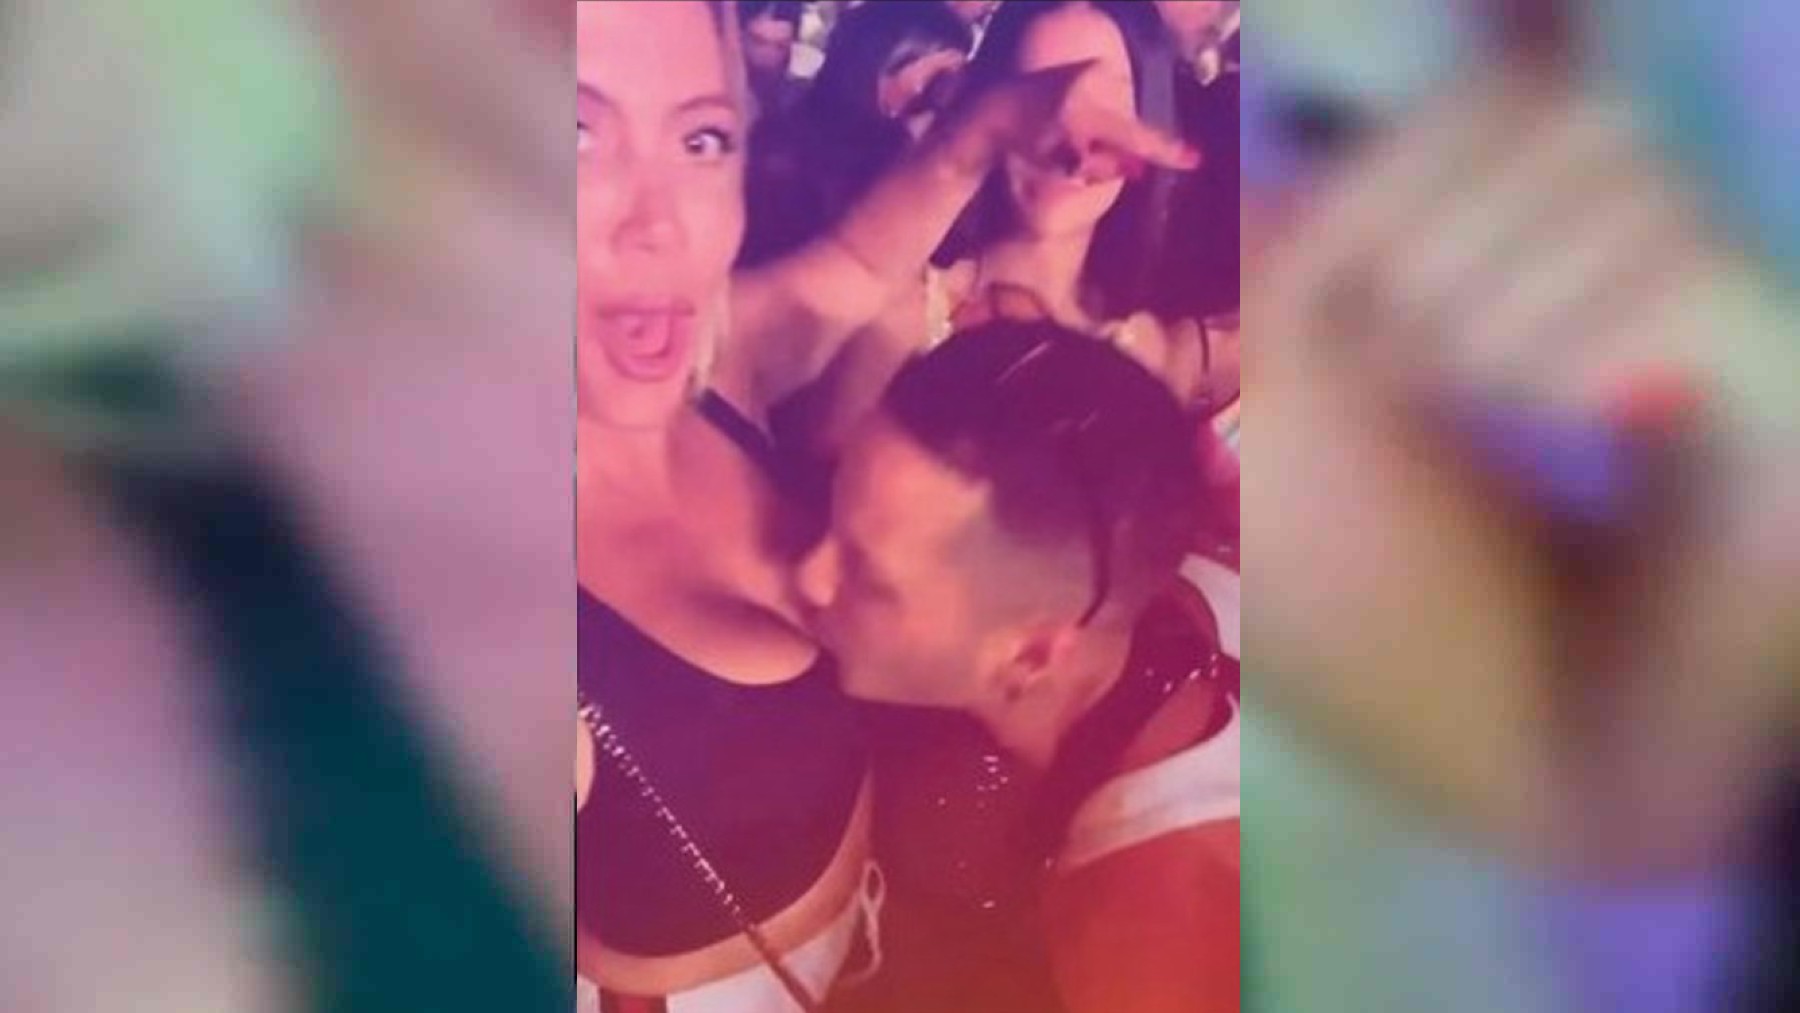 La escandalosa noche de Wanda Nara: un chico le besa los pechos y su hermana pide que borre el vídeo